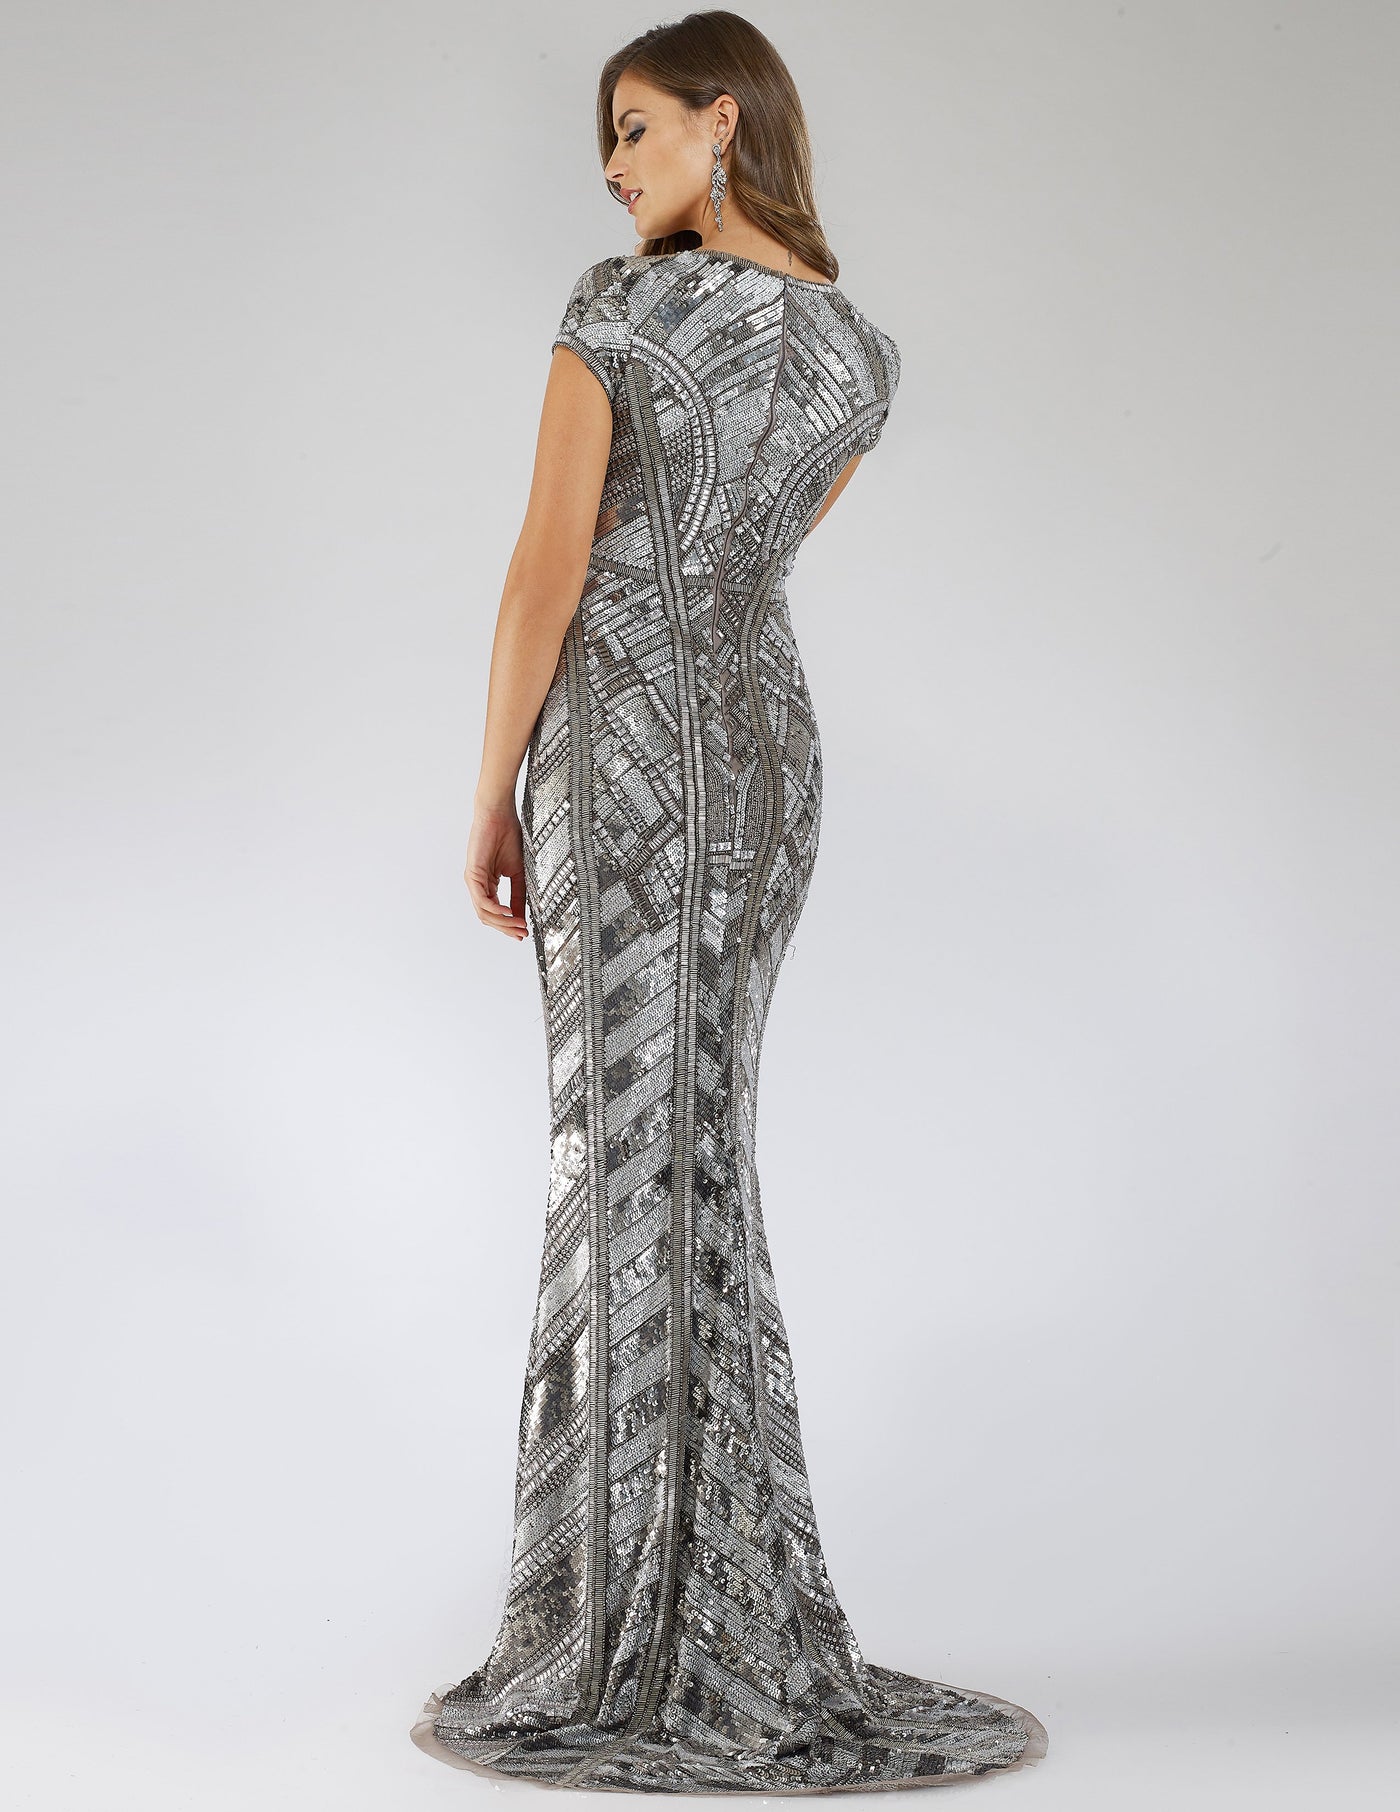 Lara 29540 - Body Con Beaded Silver Dress